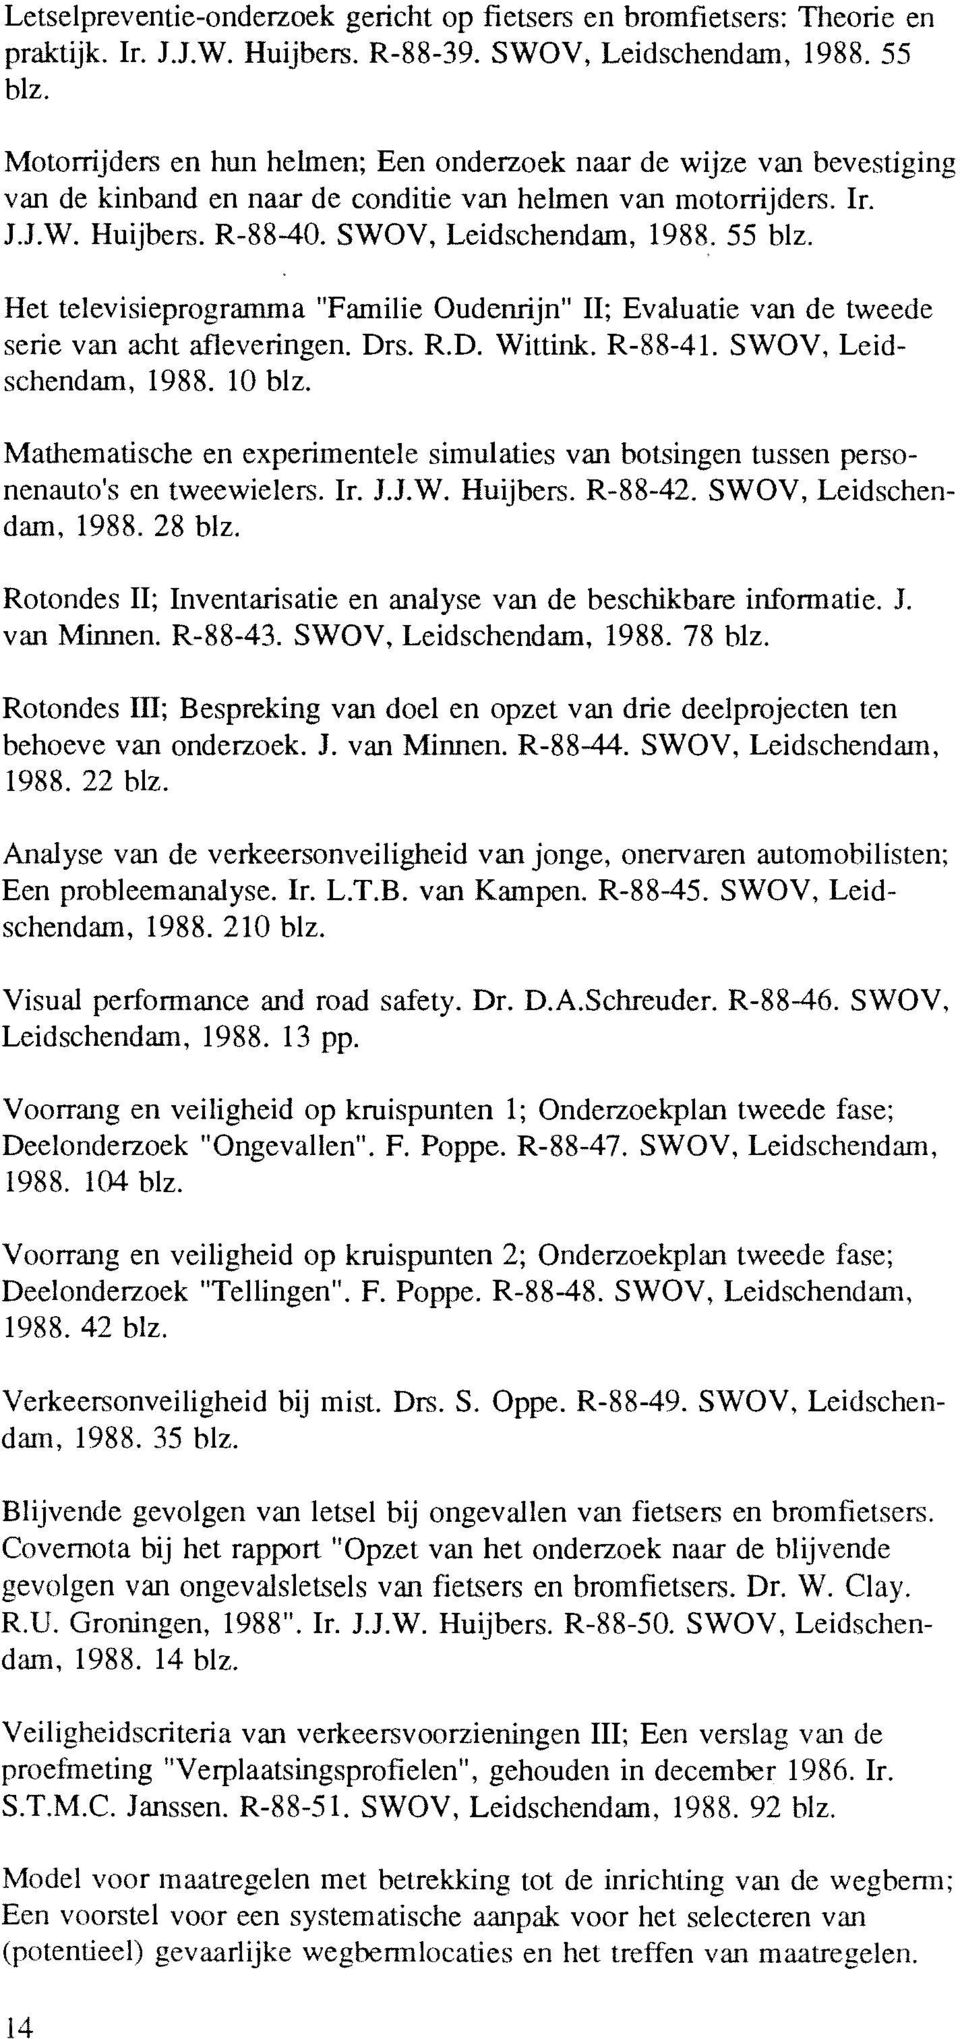 Het televisieprogramma "Familie Oudenrijn" 11; Evaluatie van de tweede serie van acht afleveringen. Drs. R.D. Wittink. R-88-41. SWOV, Leidschendam, 1988. 10 blz.